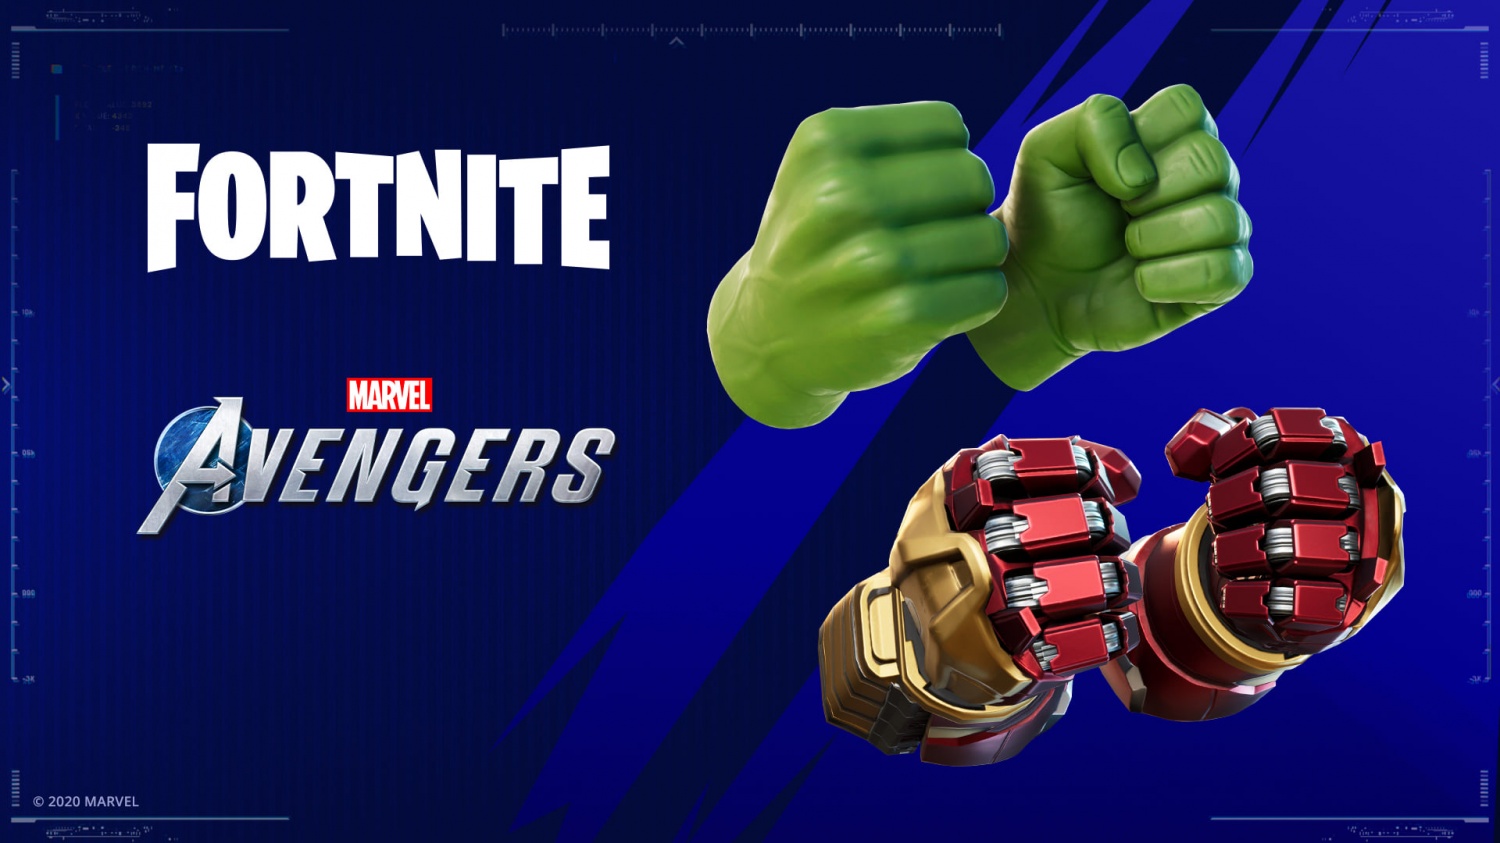 Fortnite Avengers free pickaxe